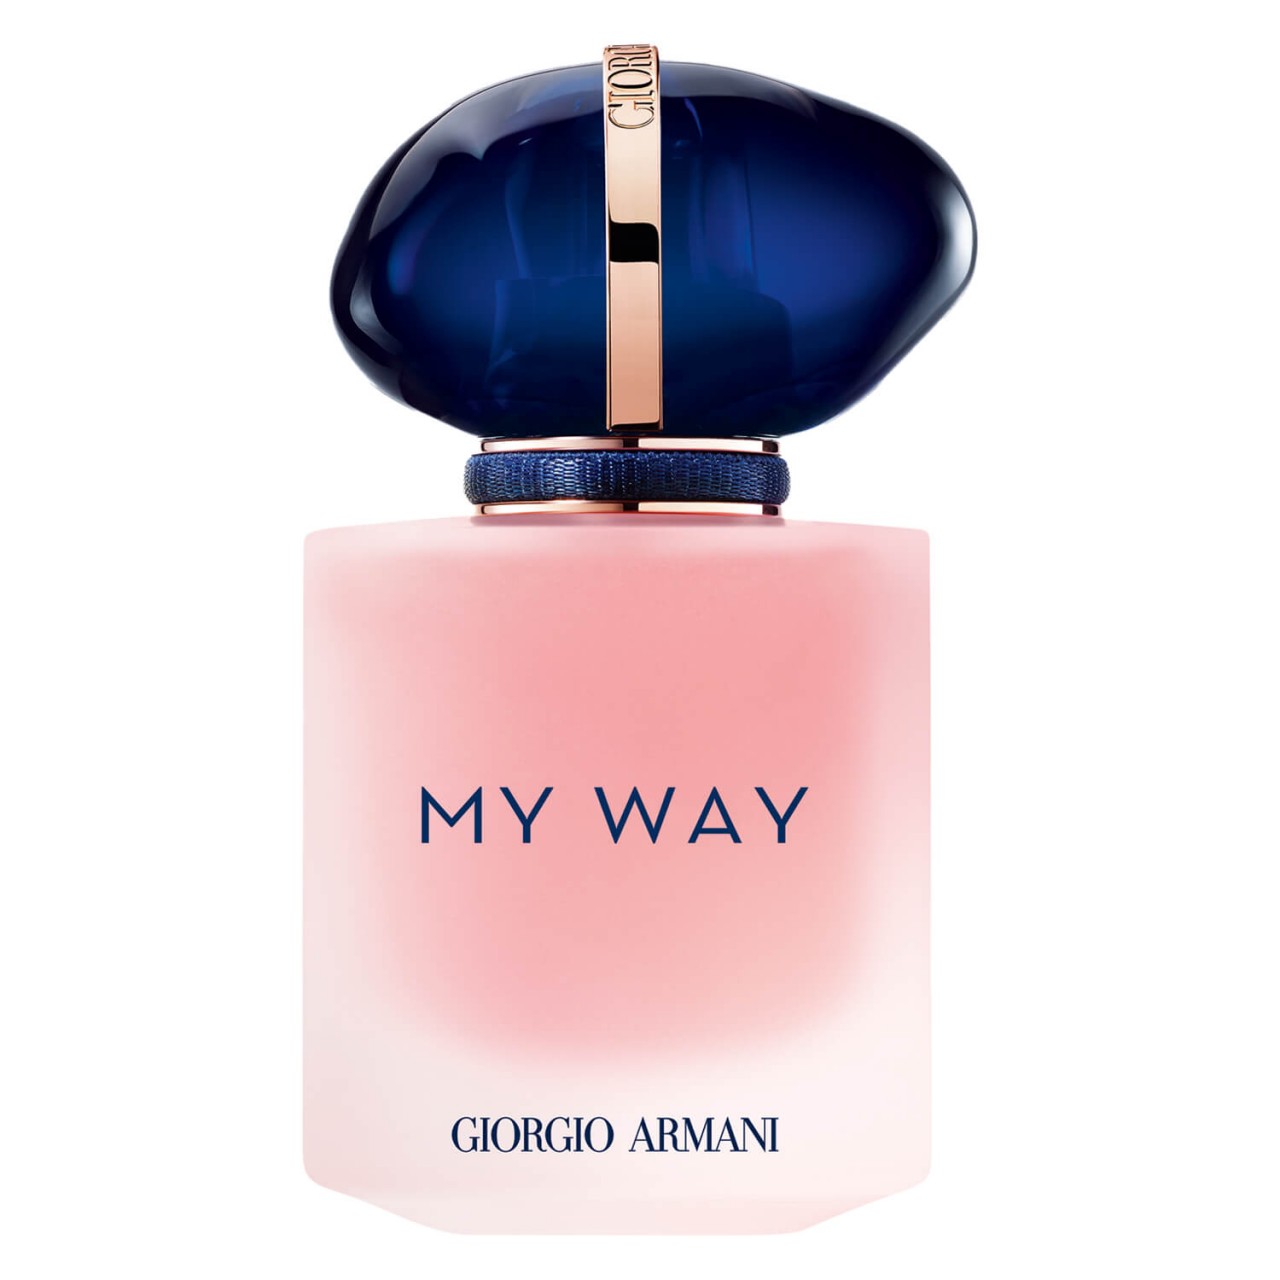 MY WAY - Floral Eau de Parfum von Giorgio Armani